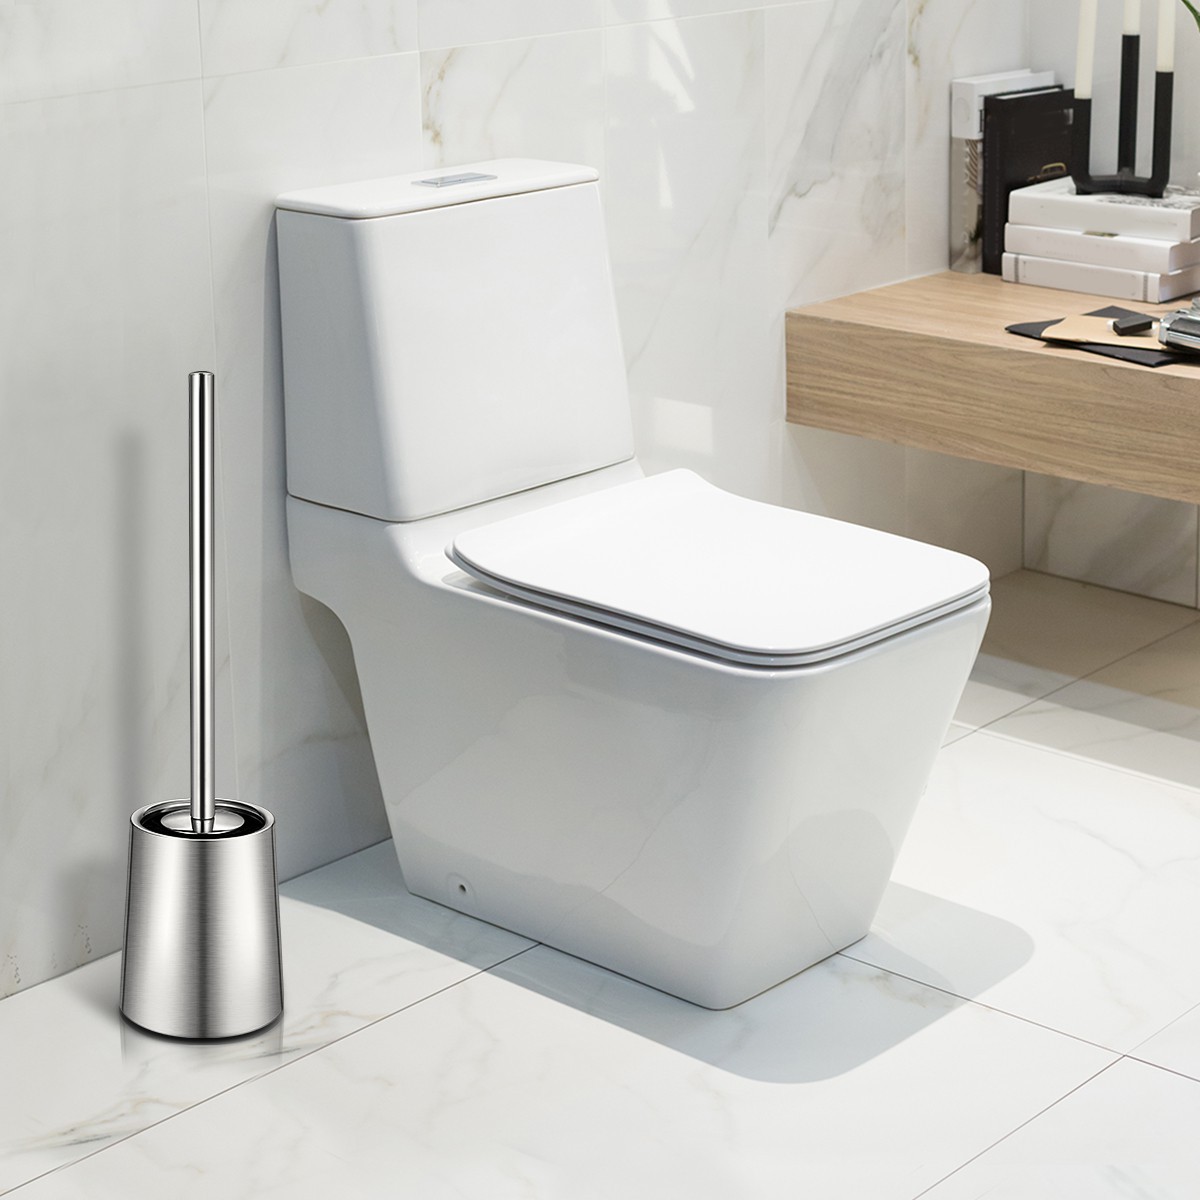 HOMEMAXS 2PCS Toilet Brushs With Holder Good Grip Stainless Steel Toilet Bowl Cleaner Brush Set for Bathroom (Sanding)